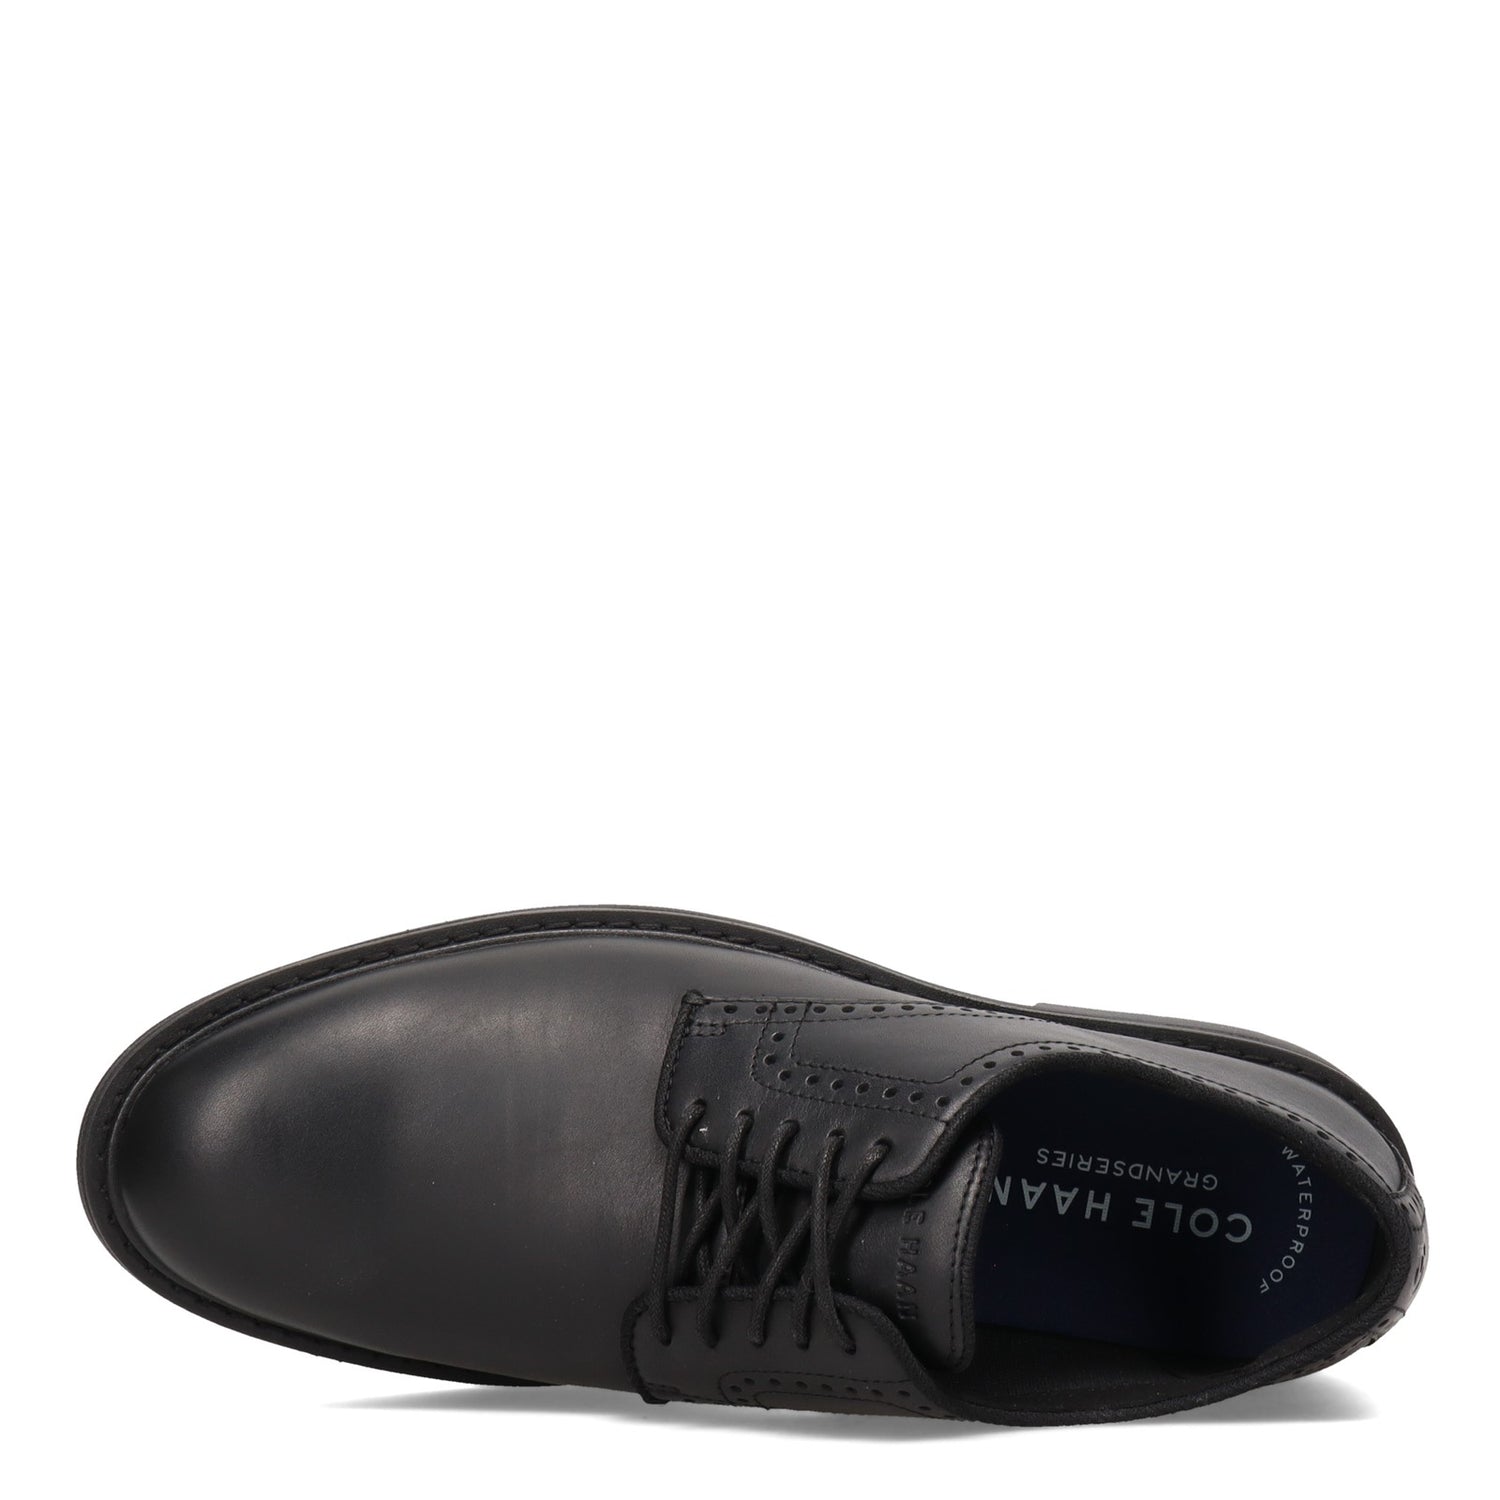 Peltz Shoes  Men's Cole Haan Go-To Plain Toe Oxford BLACK C34600